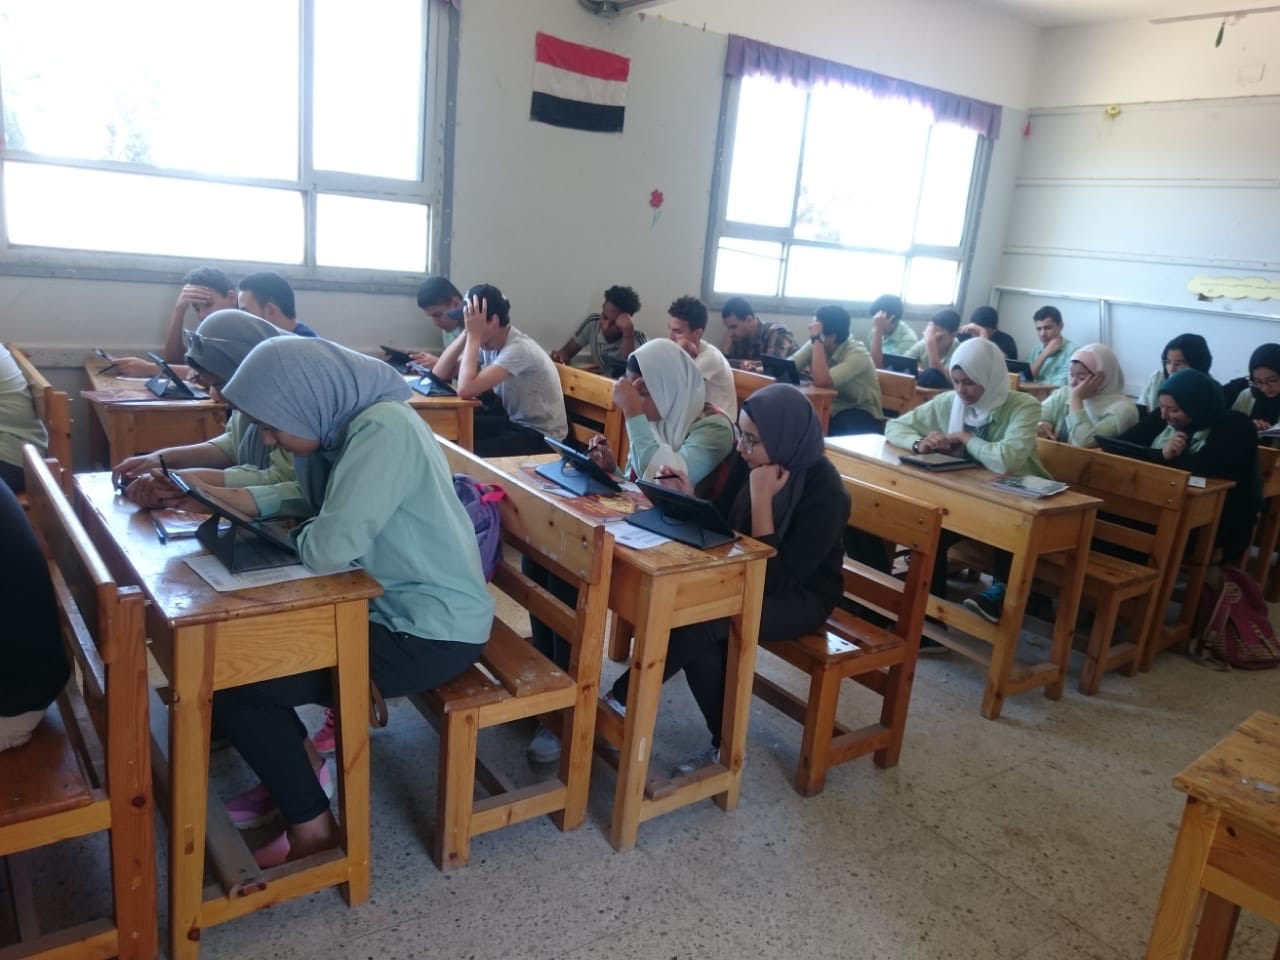 طلاب الإسماعيلية يؤدون امتحان الأحياء بالتابلت (1)